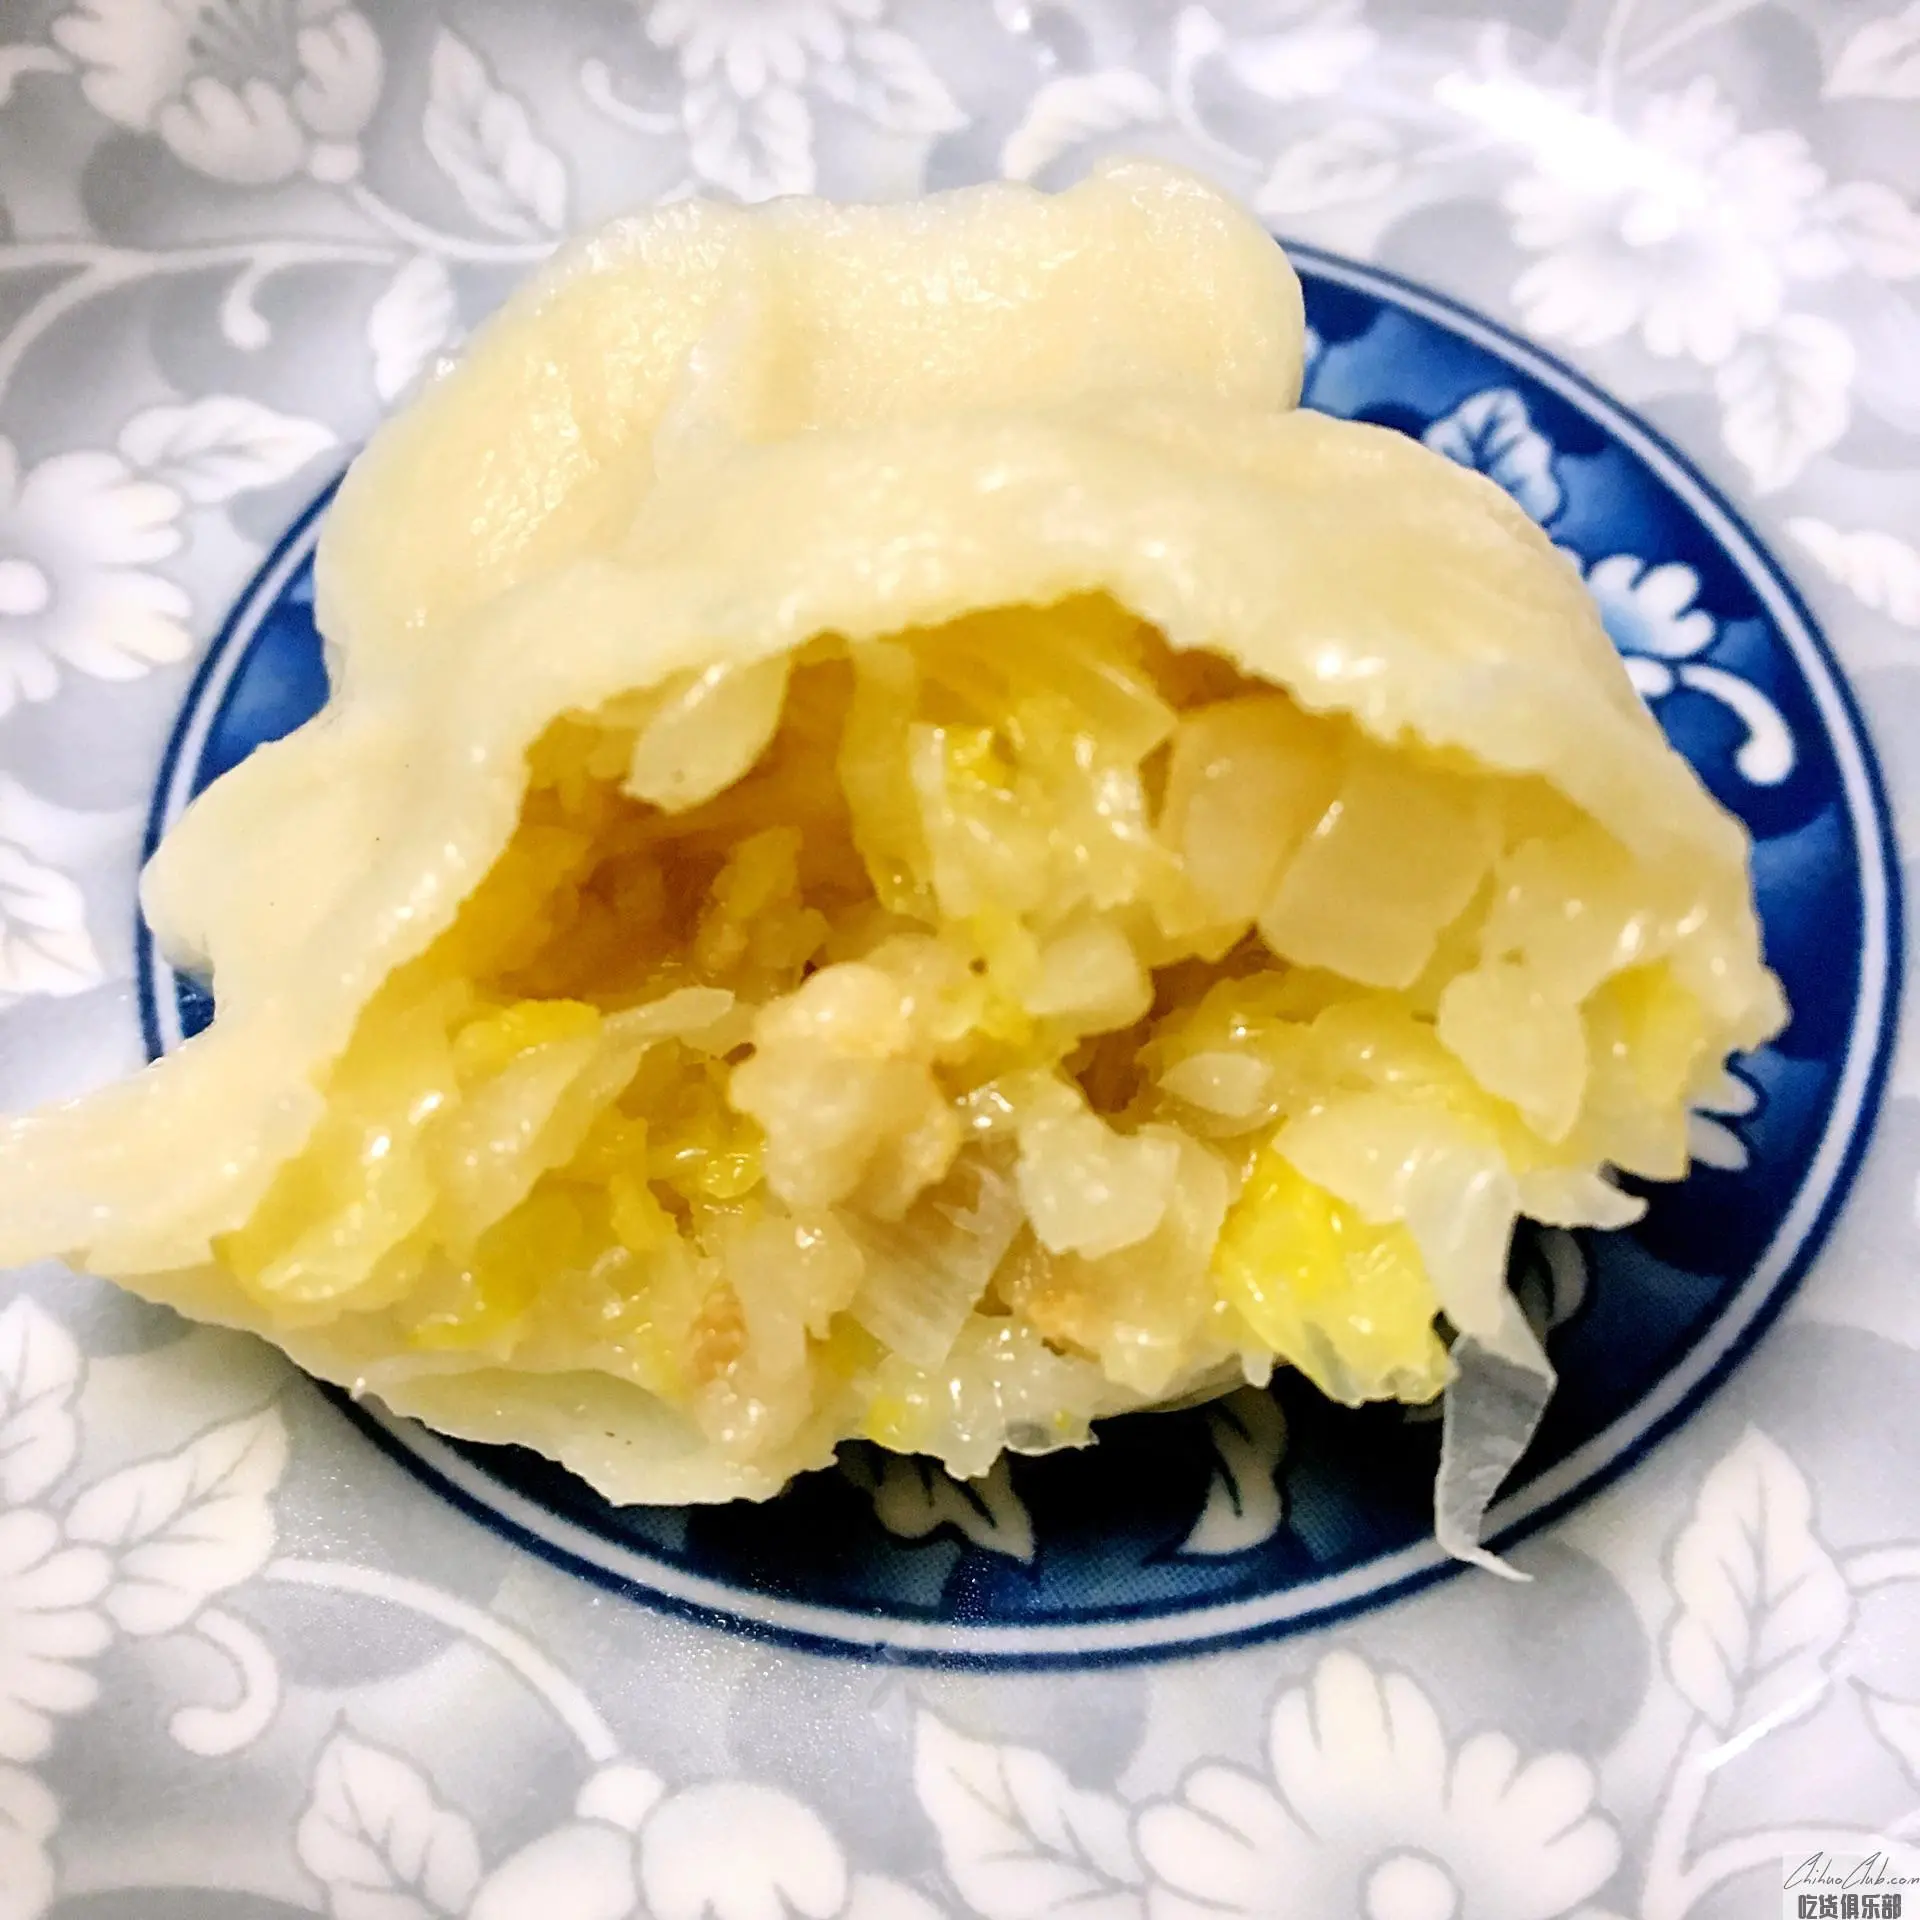 Sauerkraut dumplings